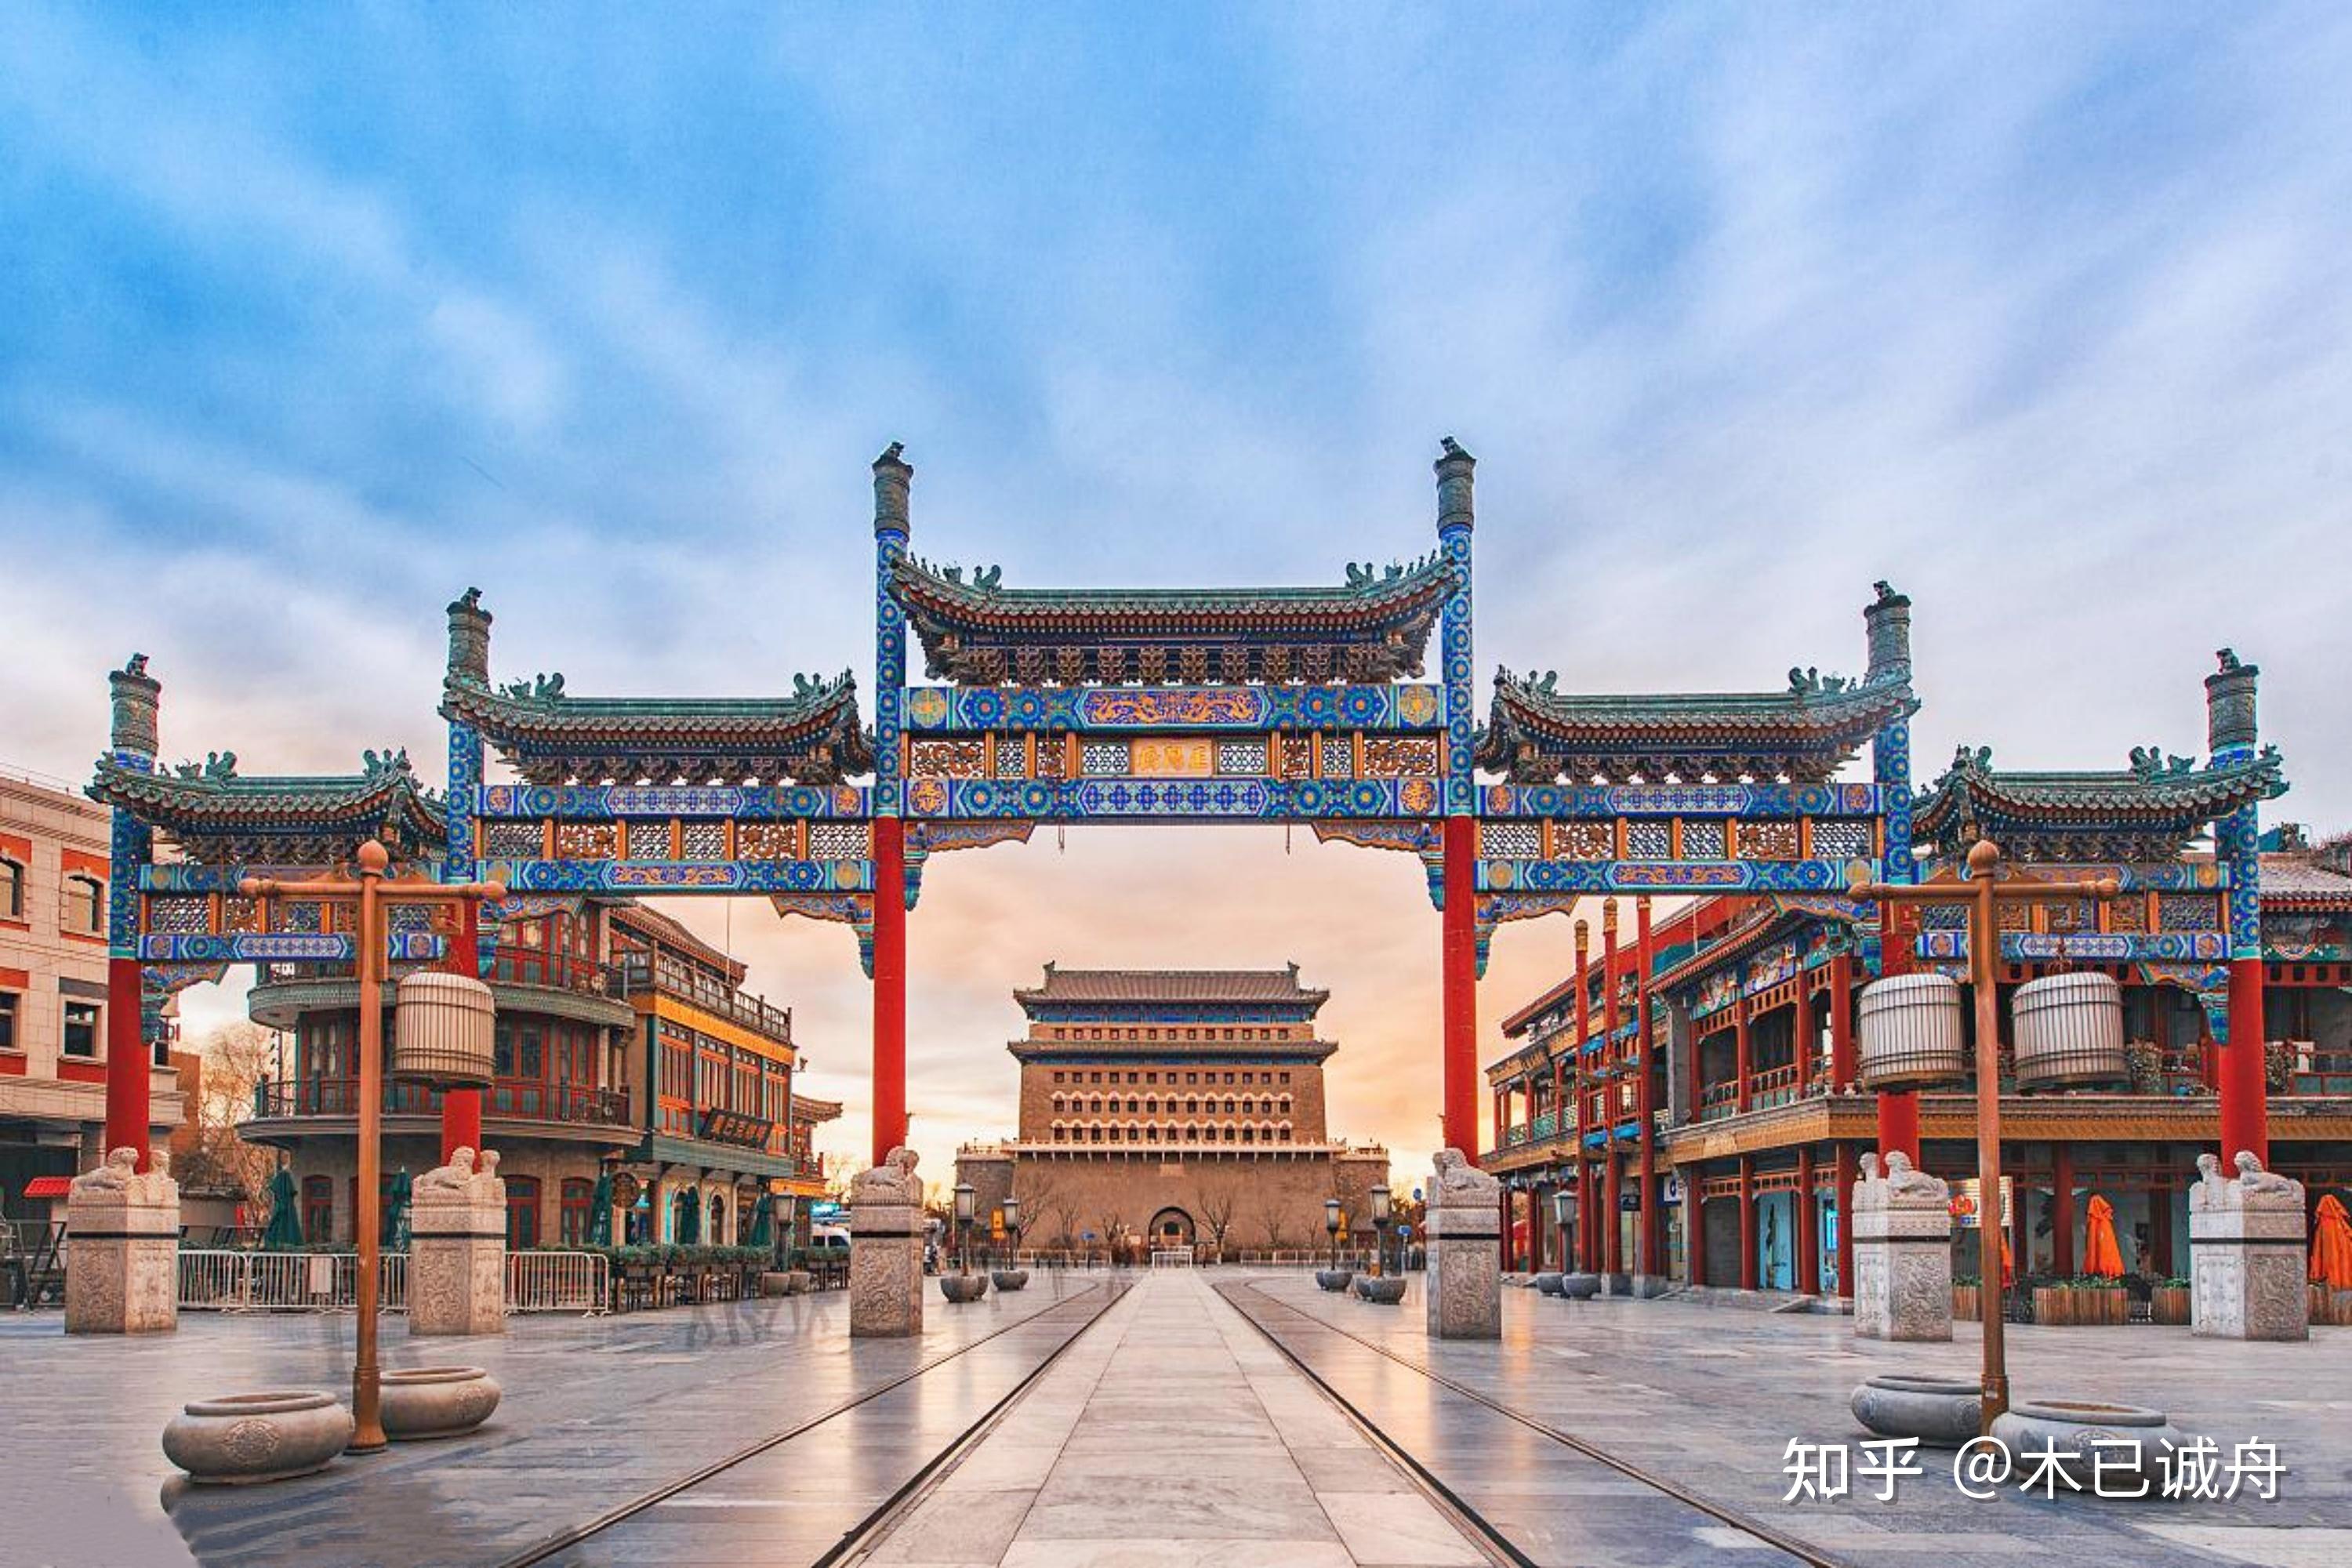 北京九门是指明,清北京内城的九座城门,分别为南面的正阳门,崇文门